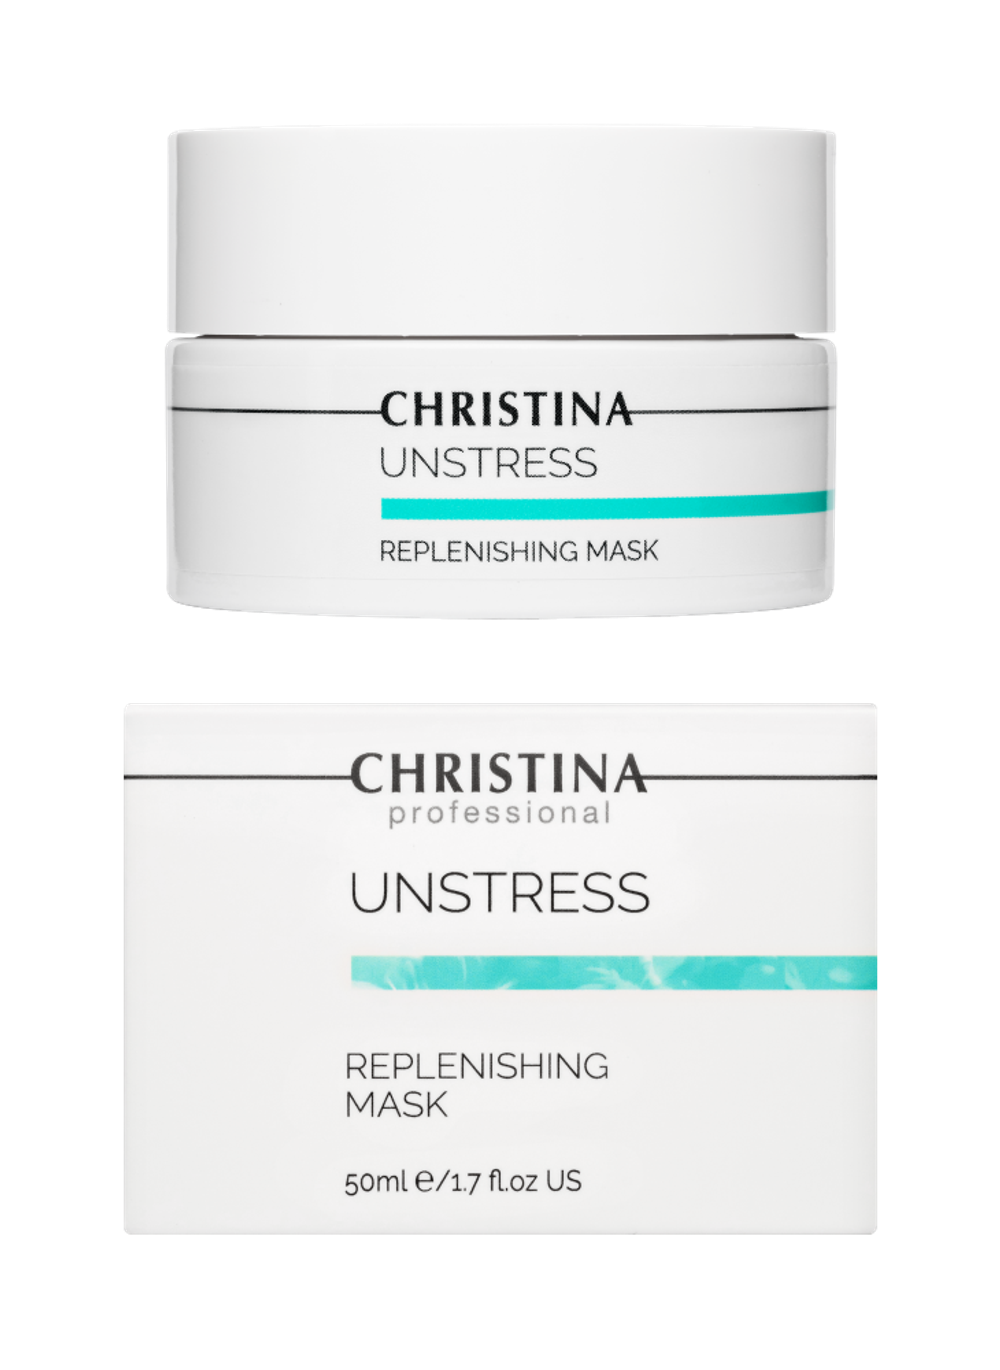 CHRISTINA Unstress Replenishing Mask